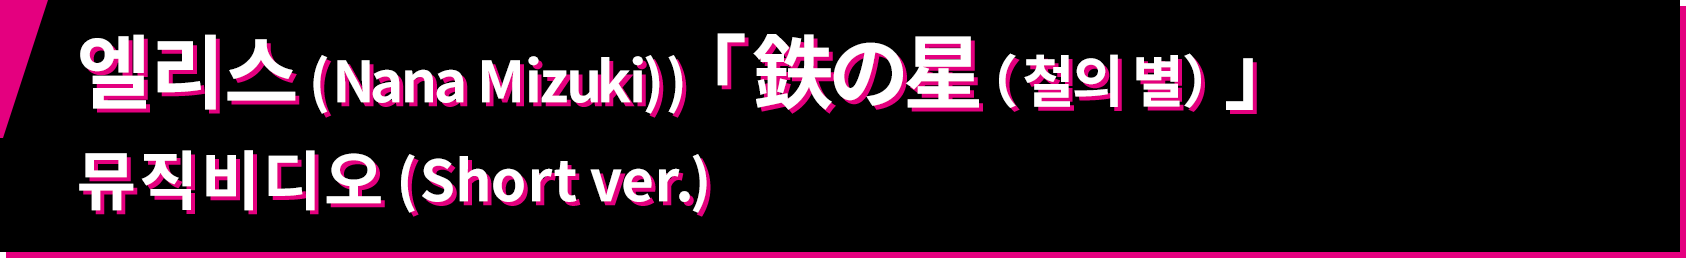 엘리스 (Nana Mizuki) 「鉄の星(철의 별)」 뮤직비디오 (Short ver.)